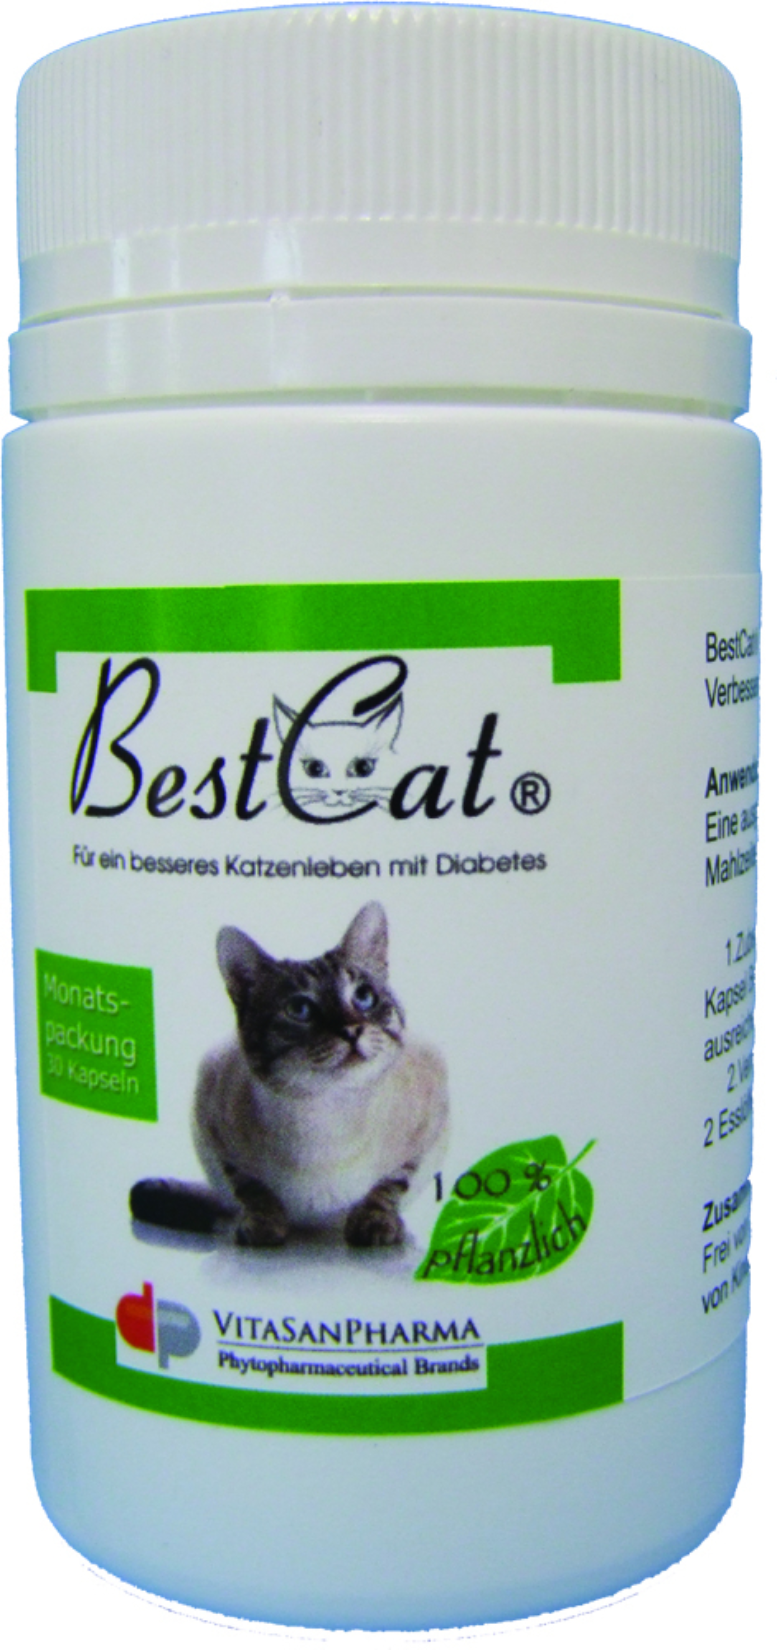 BestCat® – Naturheilmittel bei Katzendiabetes